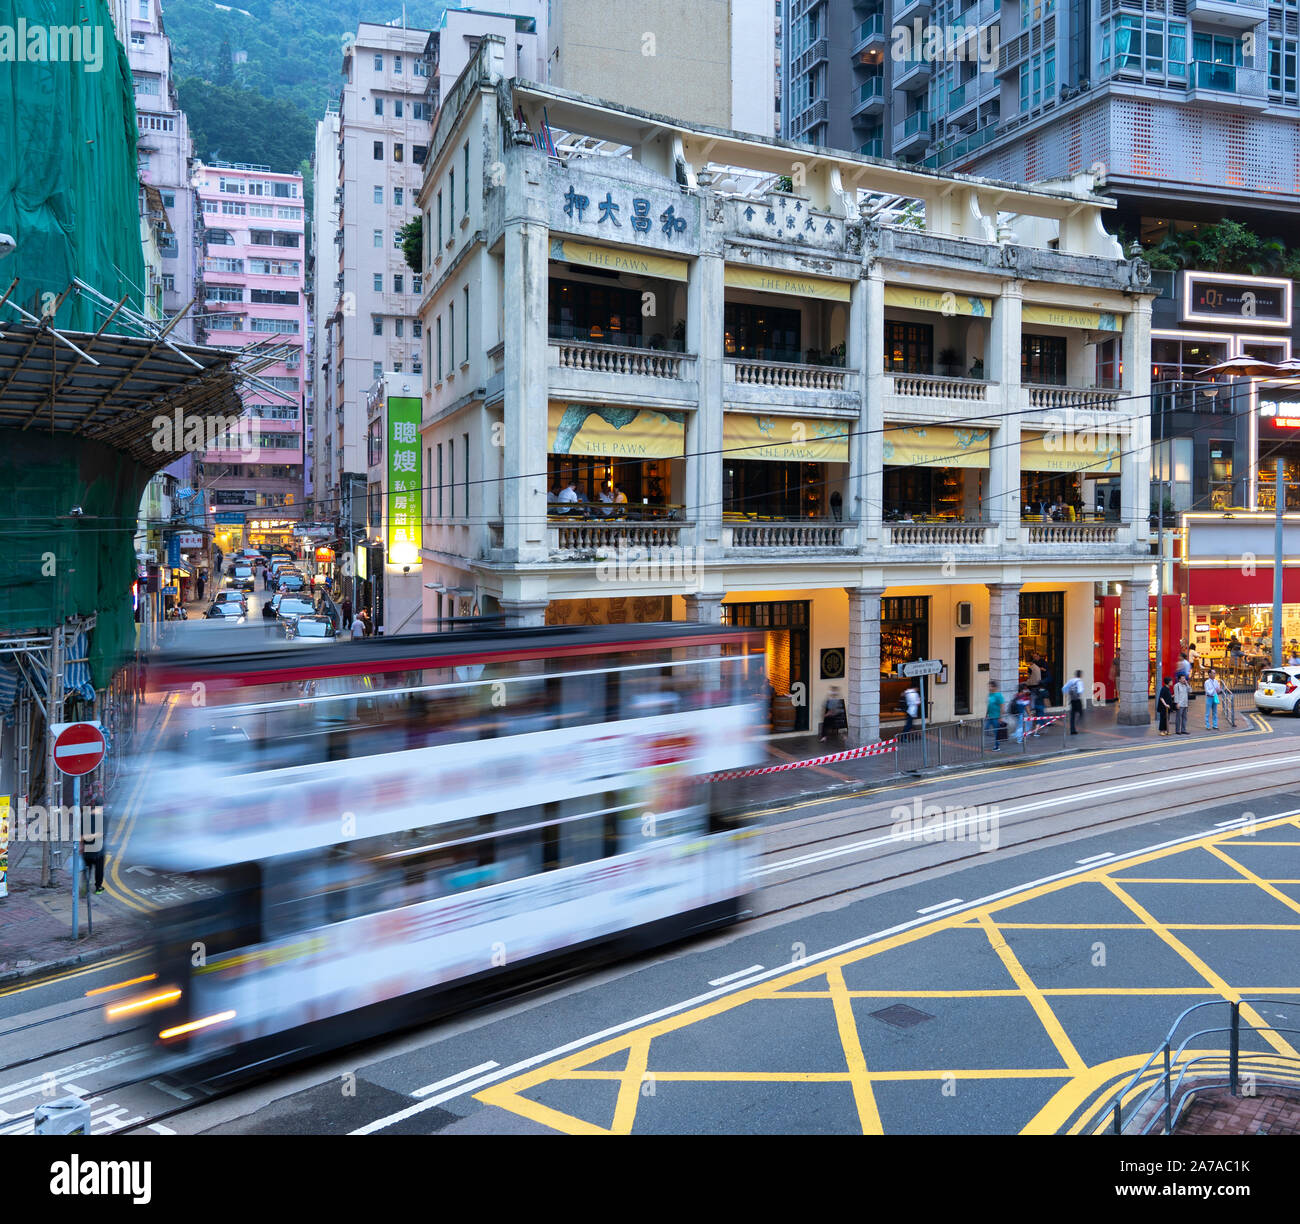 El tranvía pasa antiguo edificio colonial ahora restaurantes y bar llamado el peón en Wanchai, Hong Kong Foto de stock